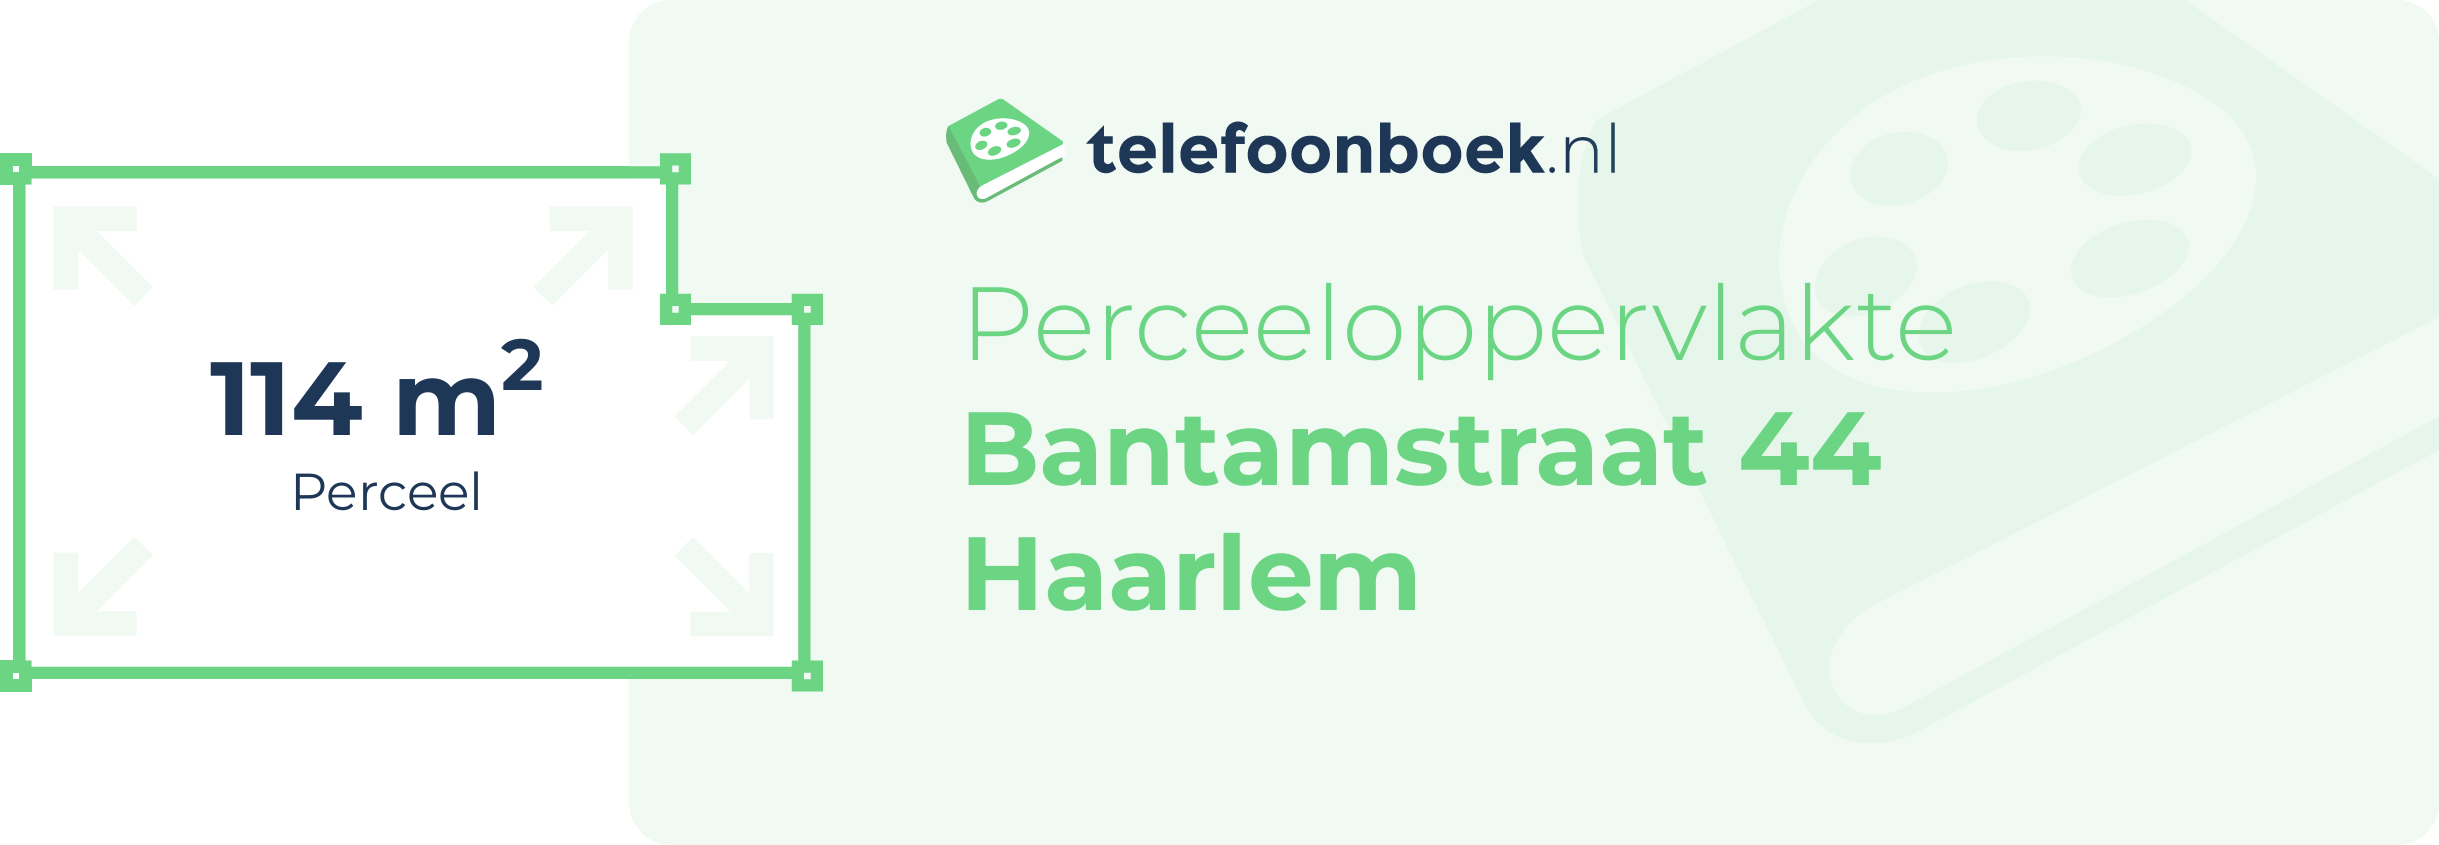 Perceeloppervlakte Bantamstraat 44 Haarlem